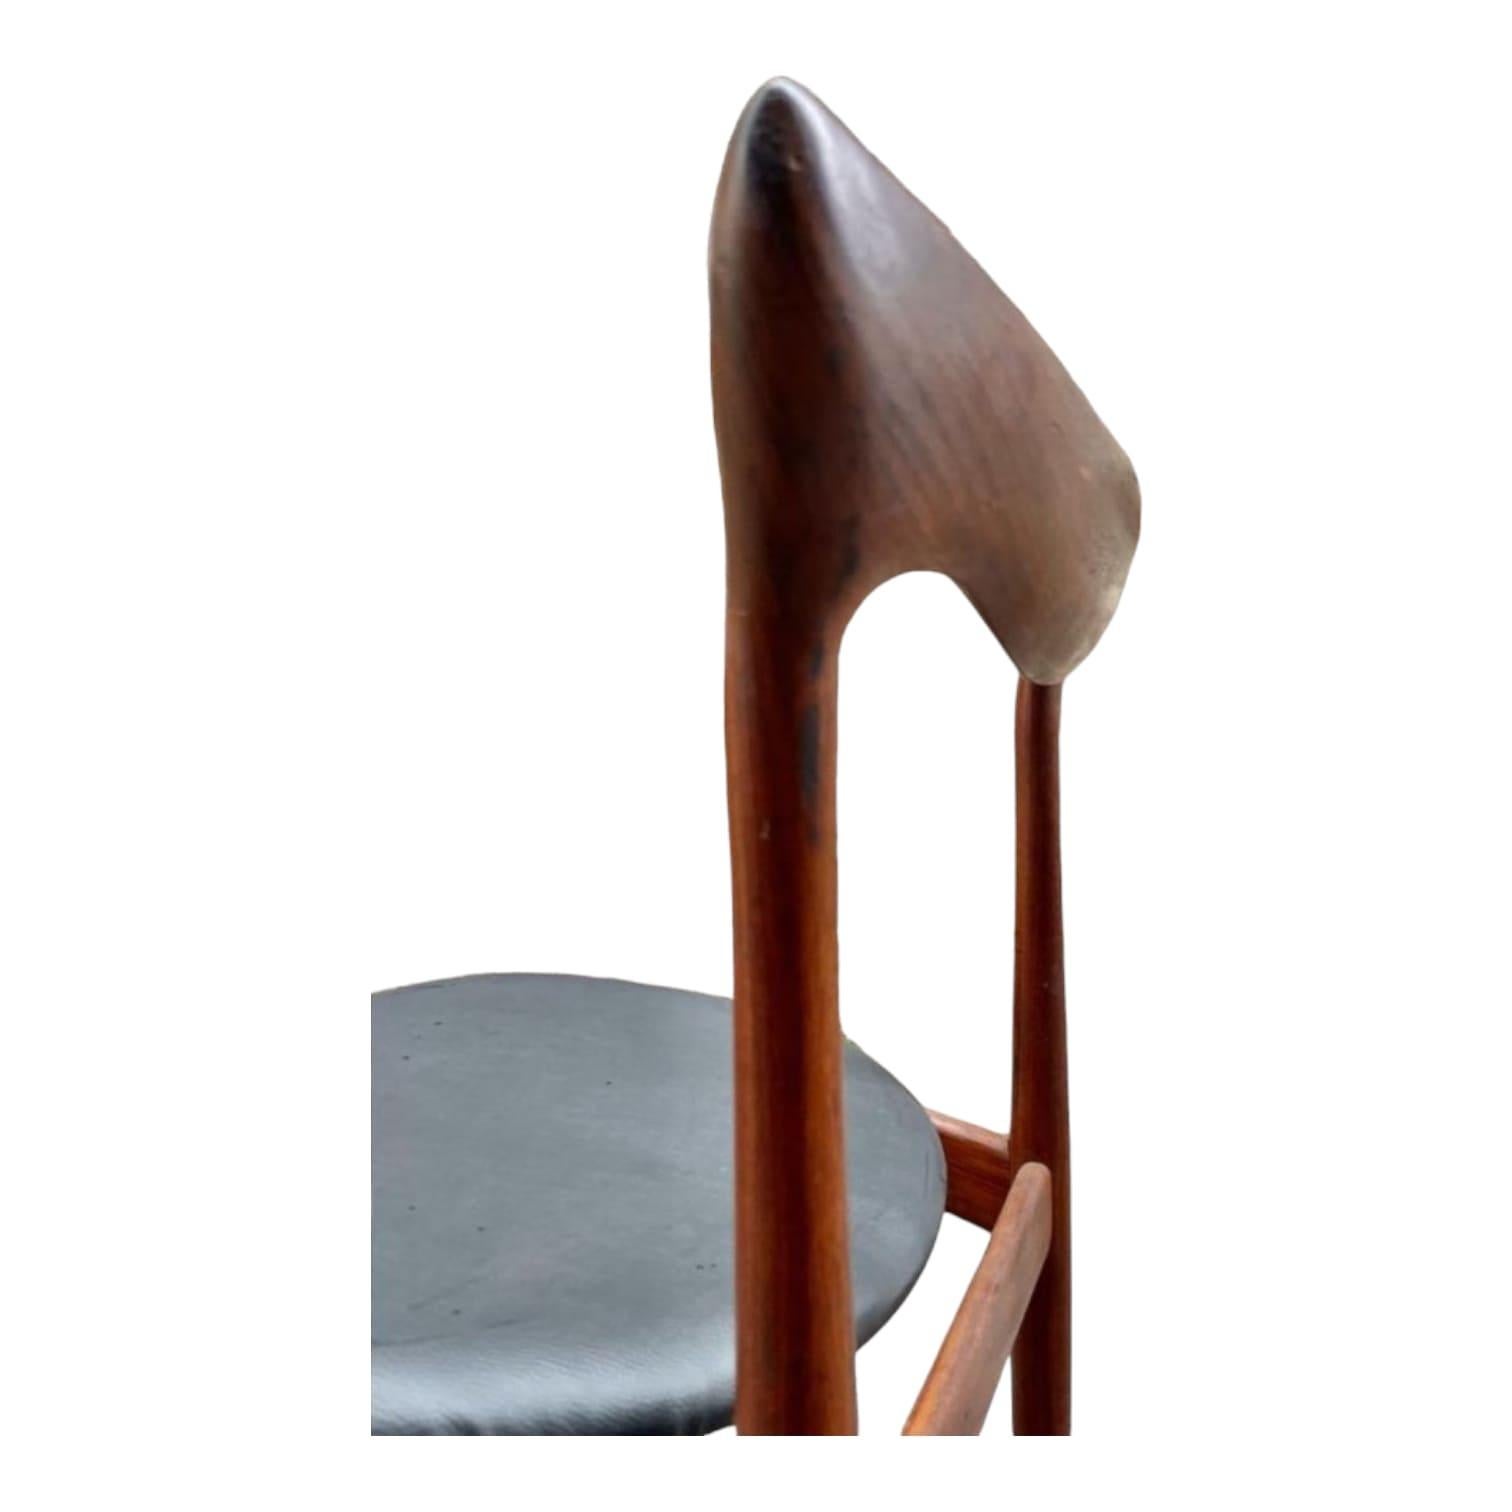 Wir freuen uns, Ihnen diese großartige Serie von 4 Stühlen von Henri Walter Klein für Bramin aus den 1960er Jahren präsentieren zu können. Diese atemberaubenden dänischen Antiquitäten sind mit viel Liebe zum Detail und außergewöhnlicher